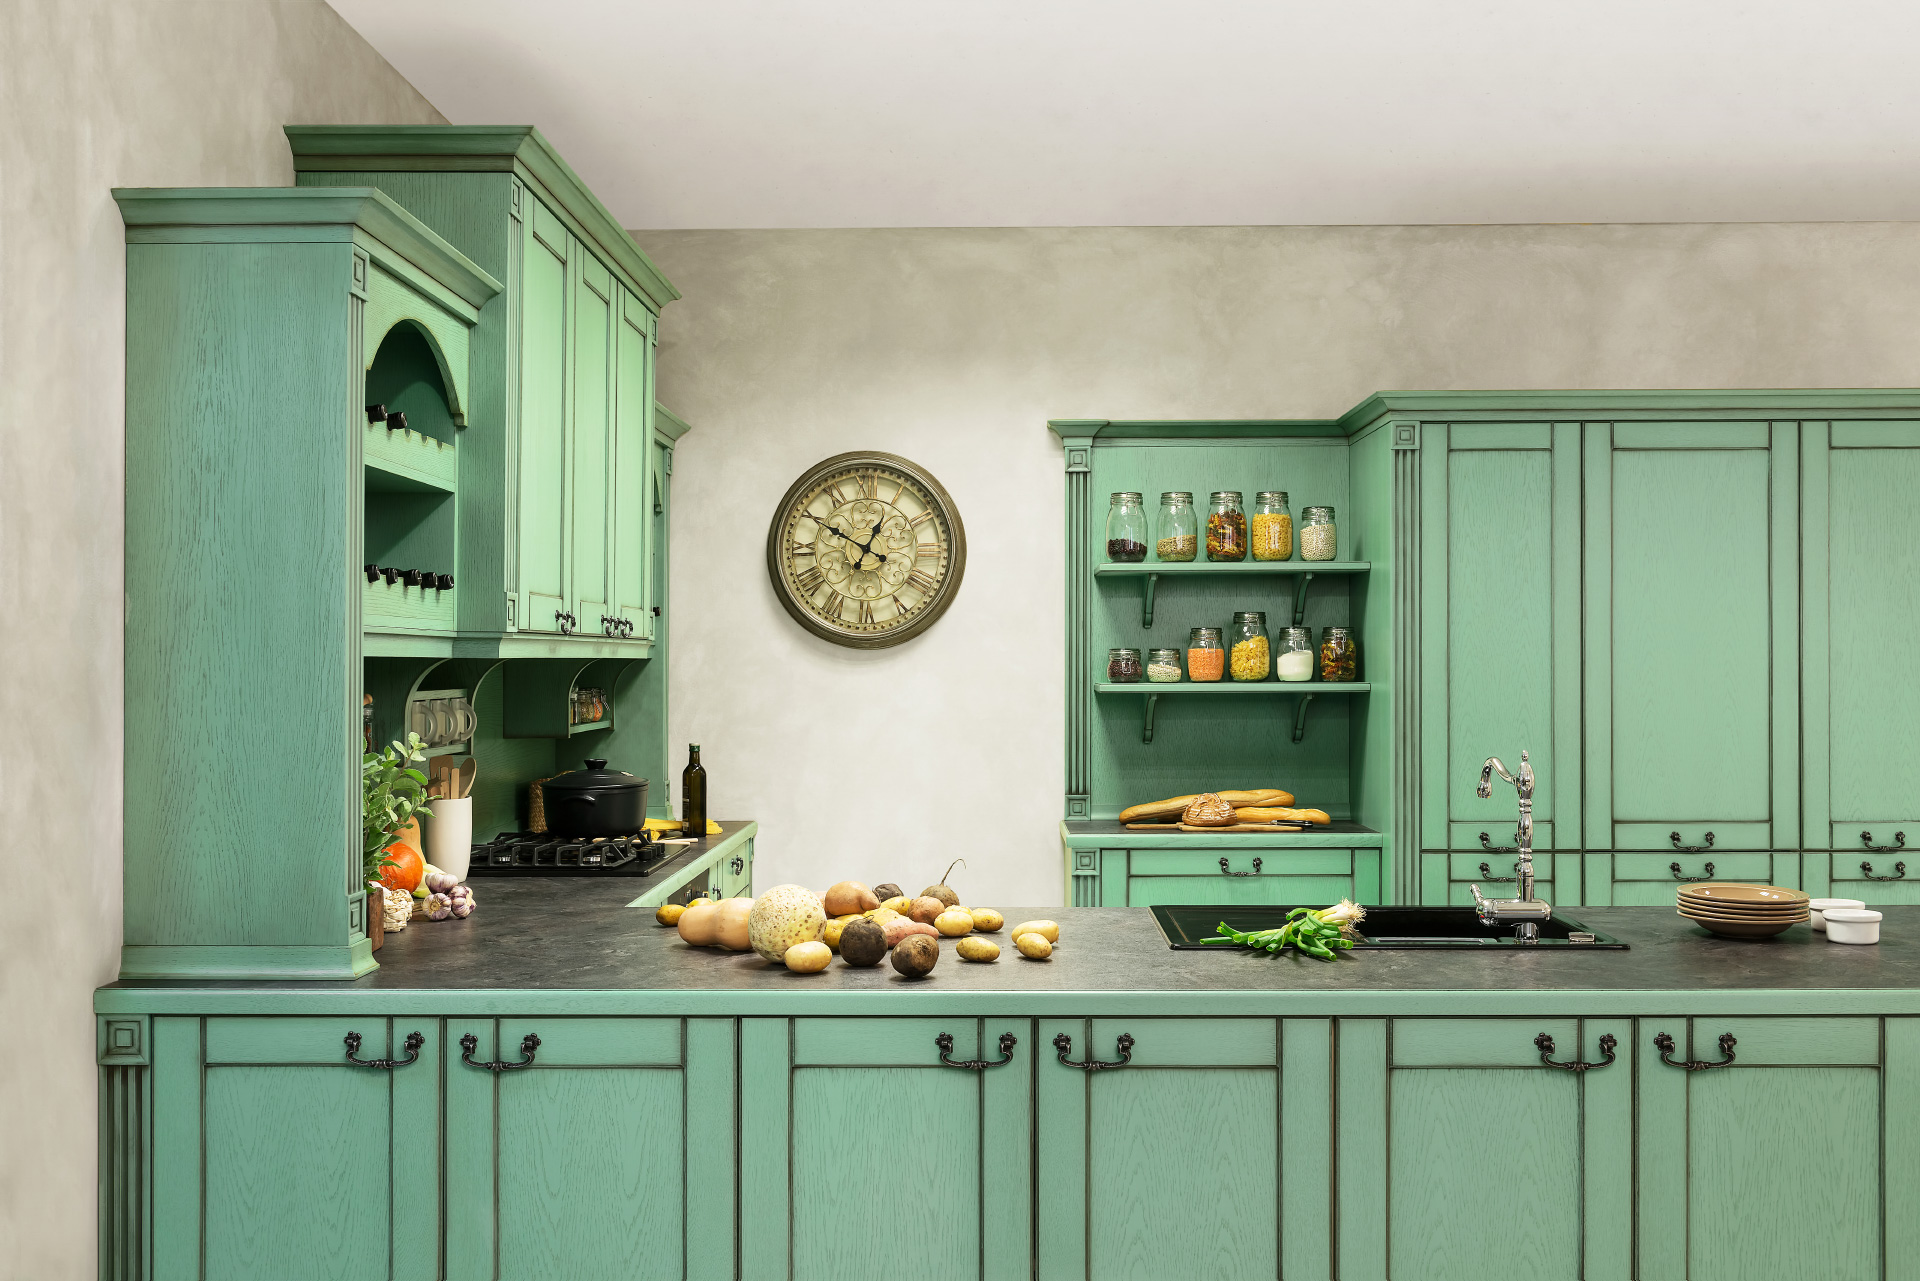 Provencia štýl bývania je nadčasový. Kuchyňa Avignon v zelenej patine.